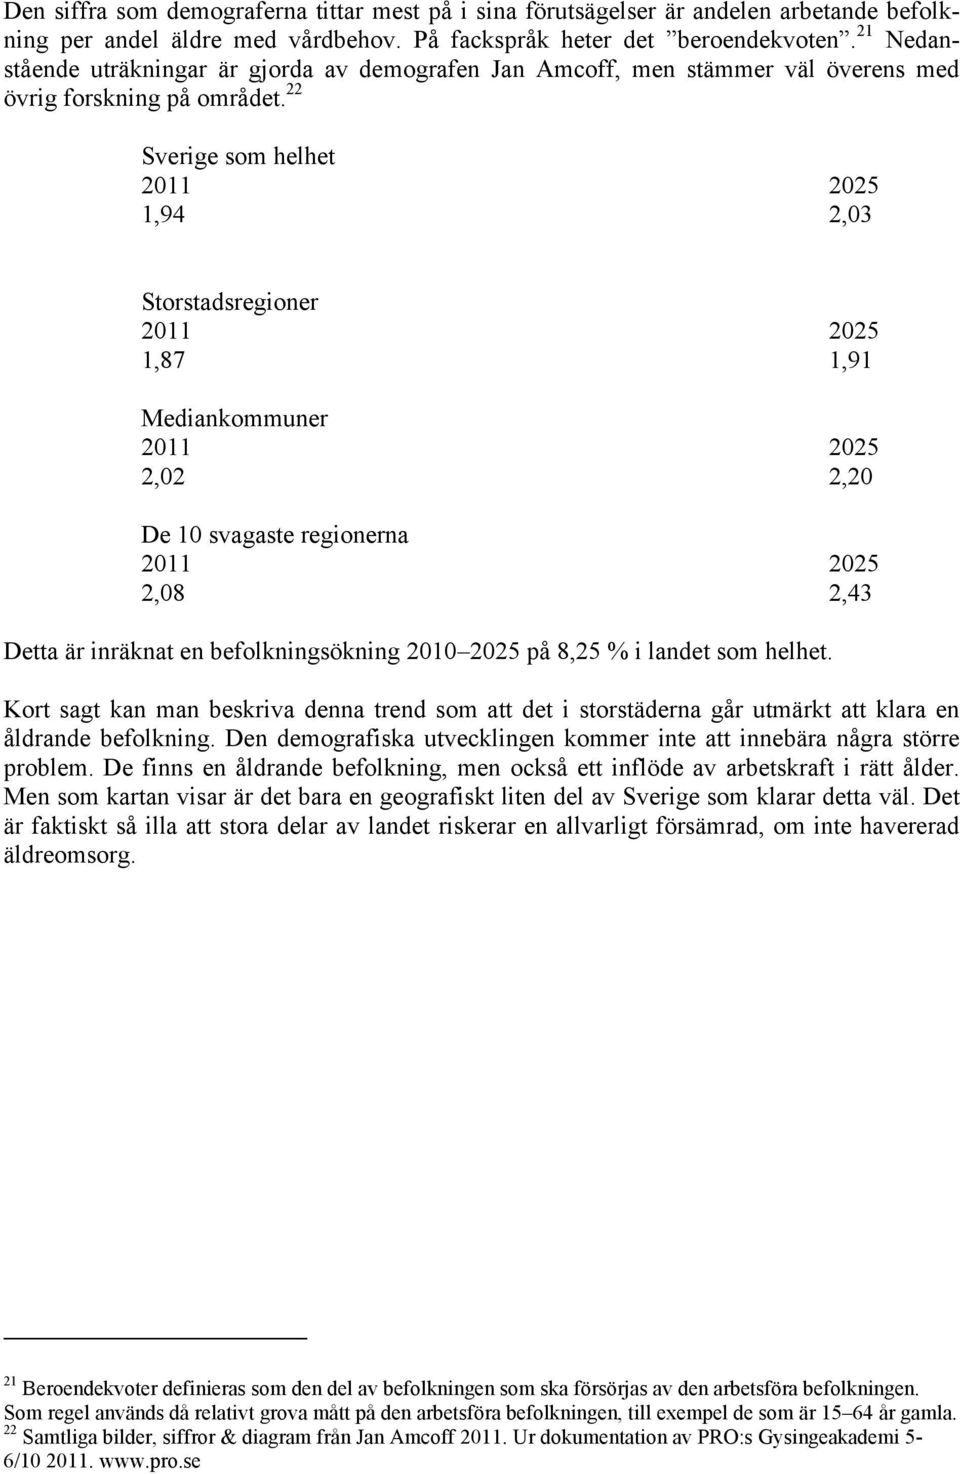 22 Sverige som helhet 2011 2025 1,94 2,03 Storstadsregioner 2011 2025 1,87 1,91 Mediankommuner 2011 2025 2,02 2,20 De 10 svagaste regionerna 2011 2025 2,08 2,43 Detta är inräknat en befolkningsökning